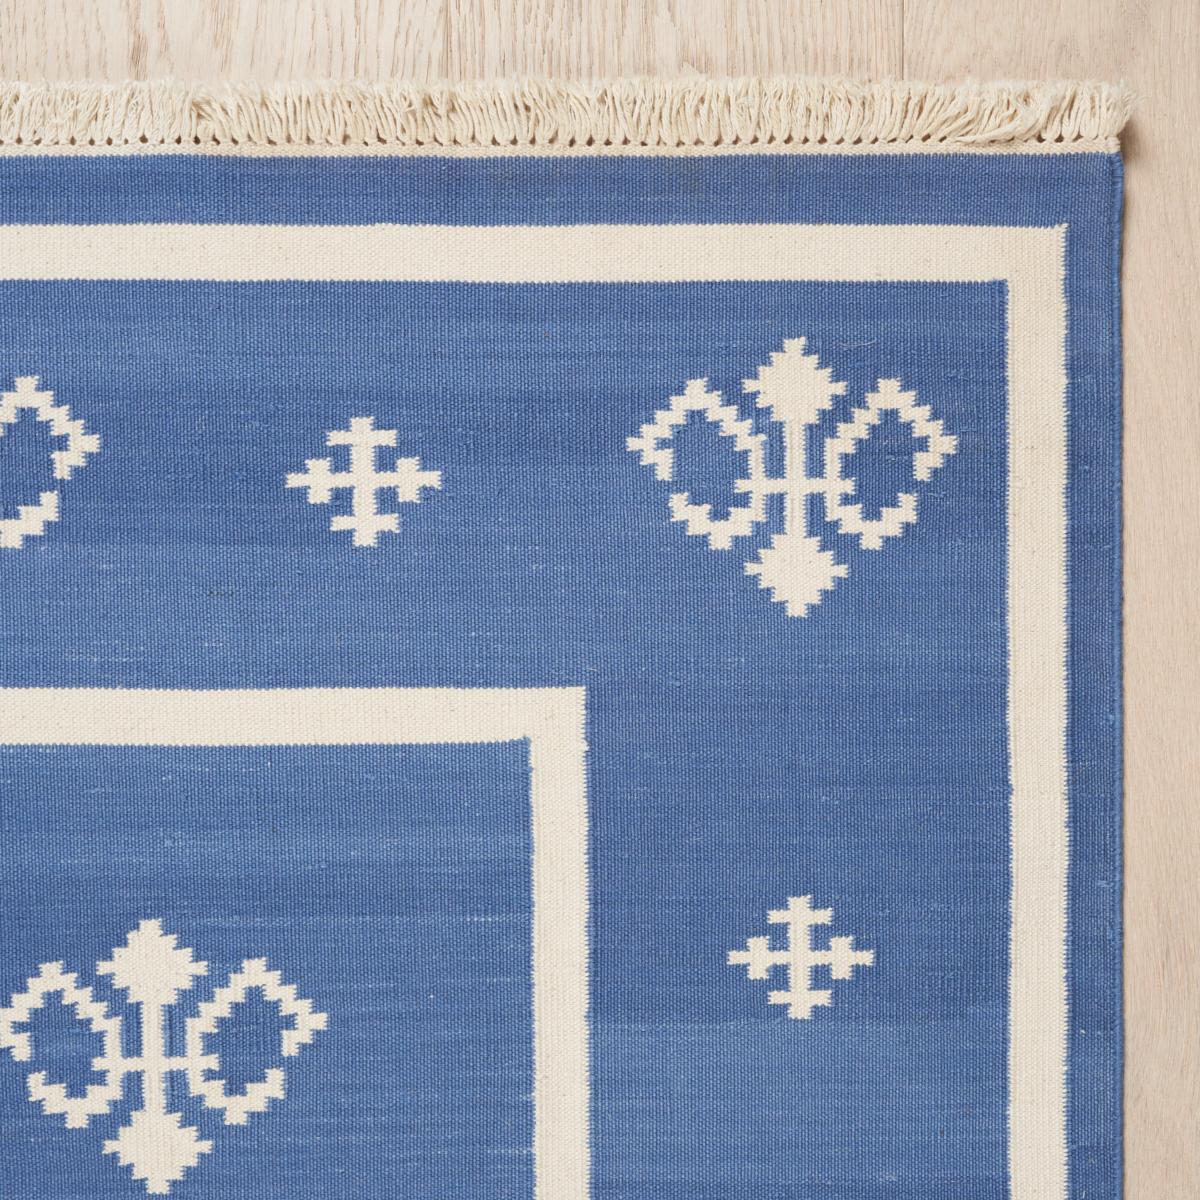 Un tissage plat en coton avec un motif polyvalent et de belles variations tonales, Amagansett est disponible dans une gamme de tailles utiles. Il s'agit d'un tapis élégant et facile à utiliser qui trouve sa place dans presque toutes les pièces.
